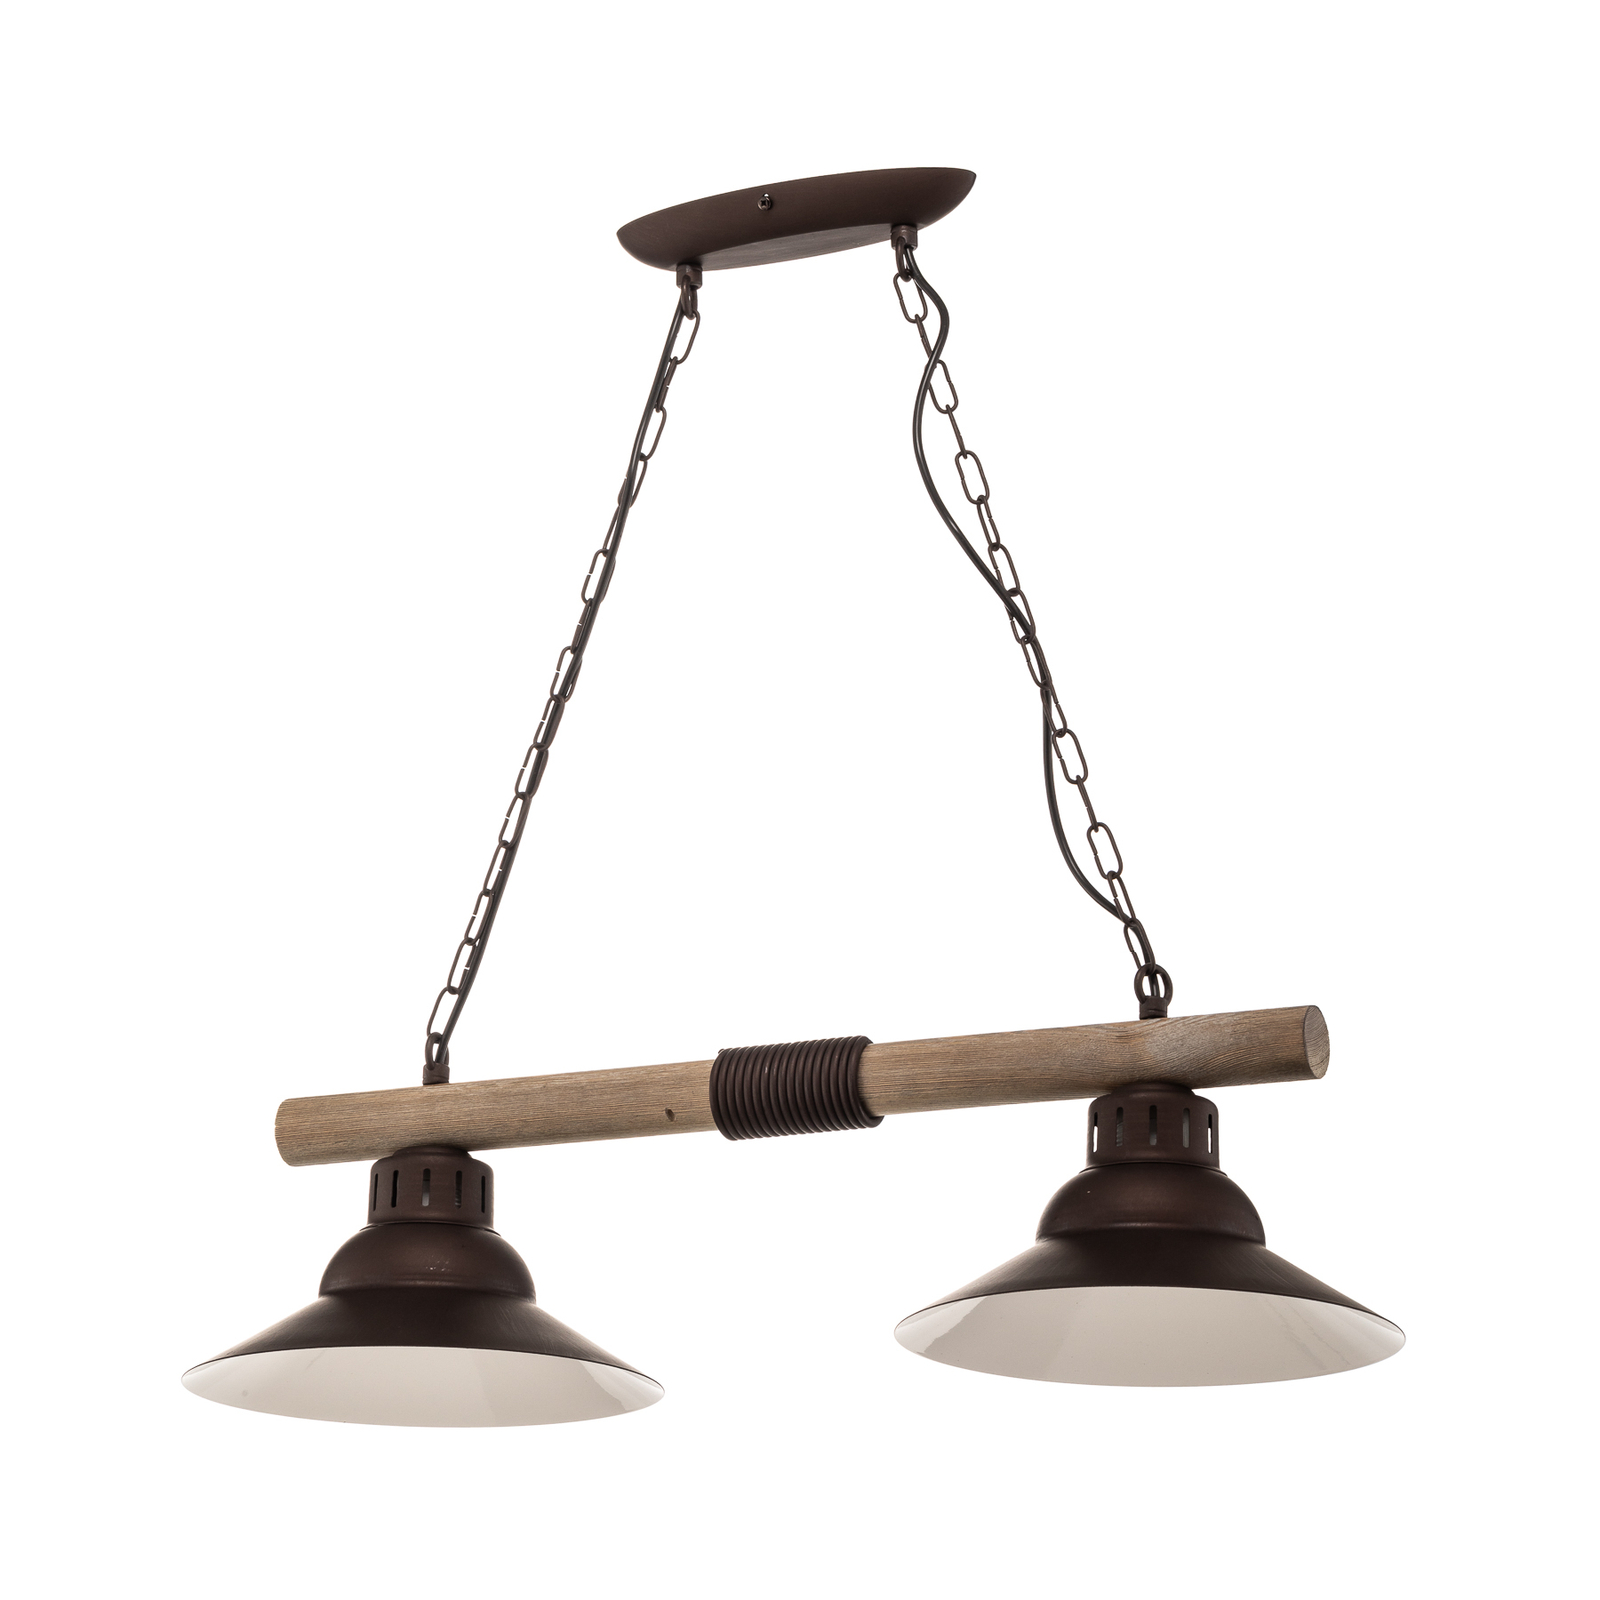 Suspension West abat-jour cuivre, deux lampes